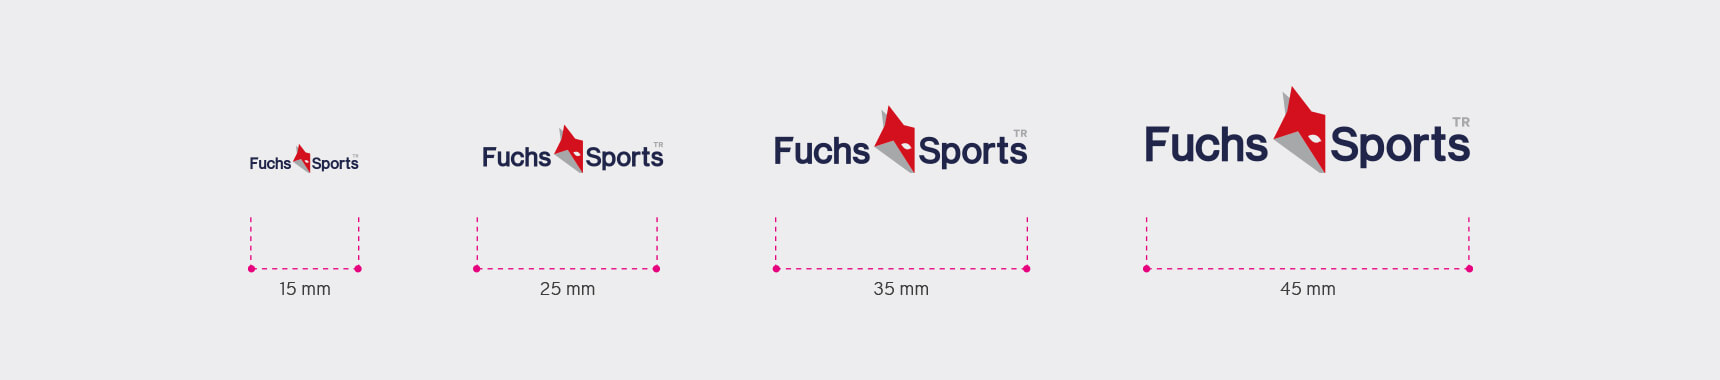 Fuchs Sports-metin 1-5- amblem-metin 2-6- sketch mockup-7- brand-screen-8- logo-9-minimum